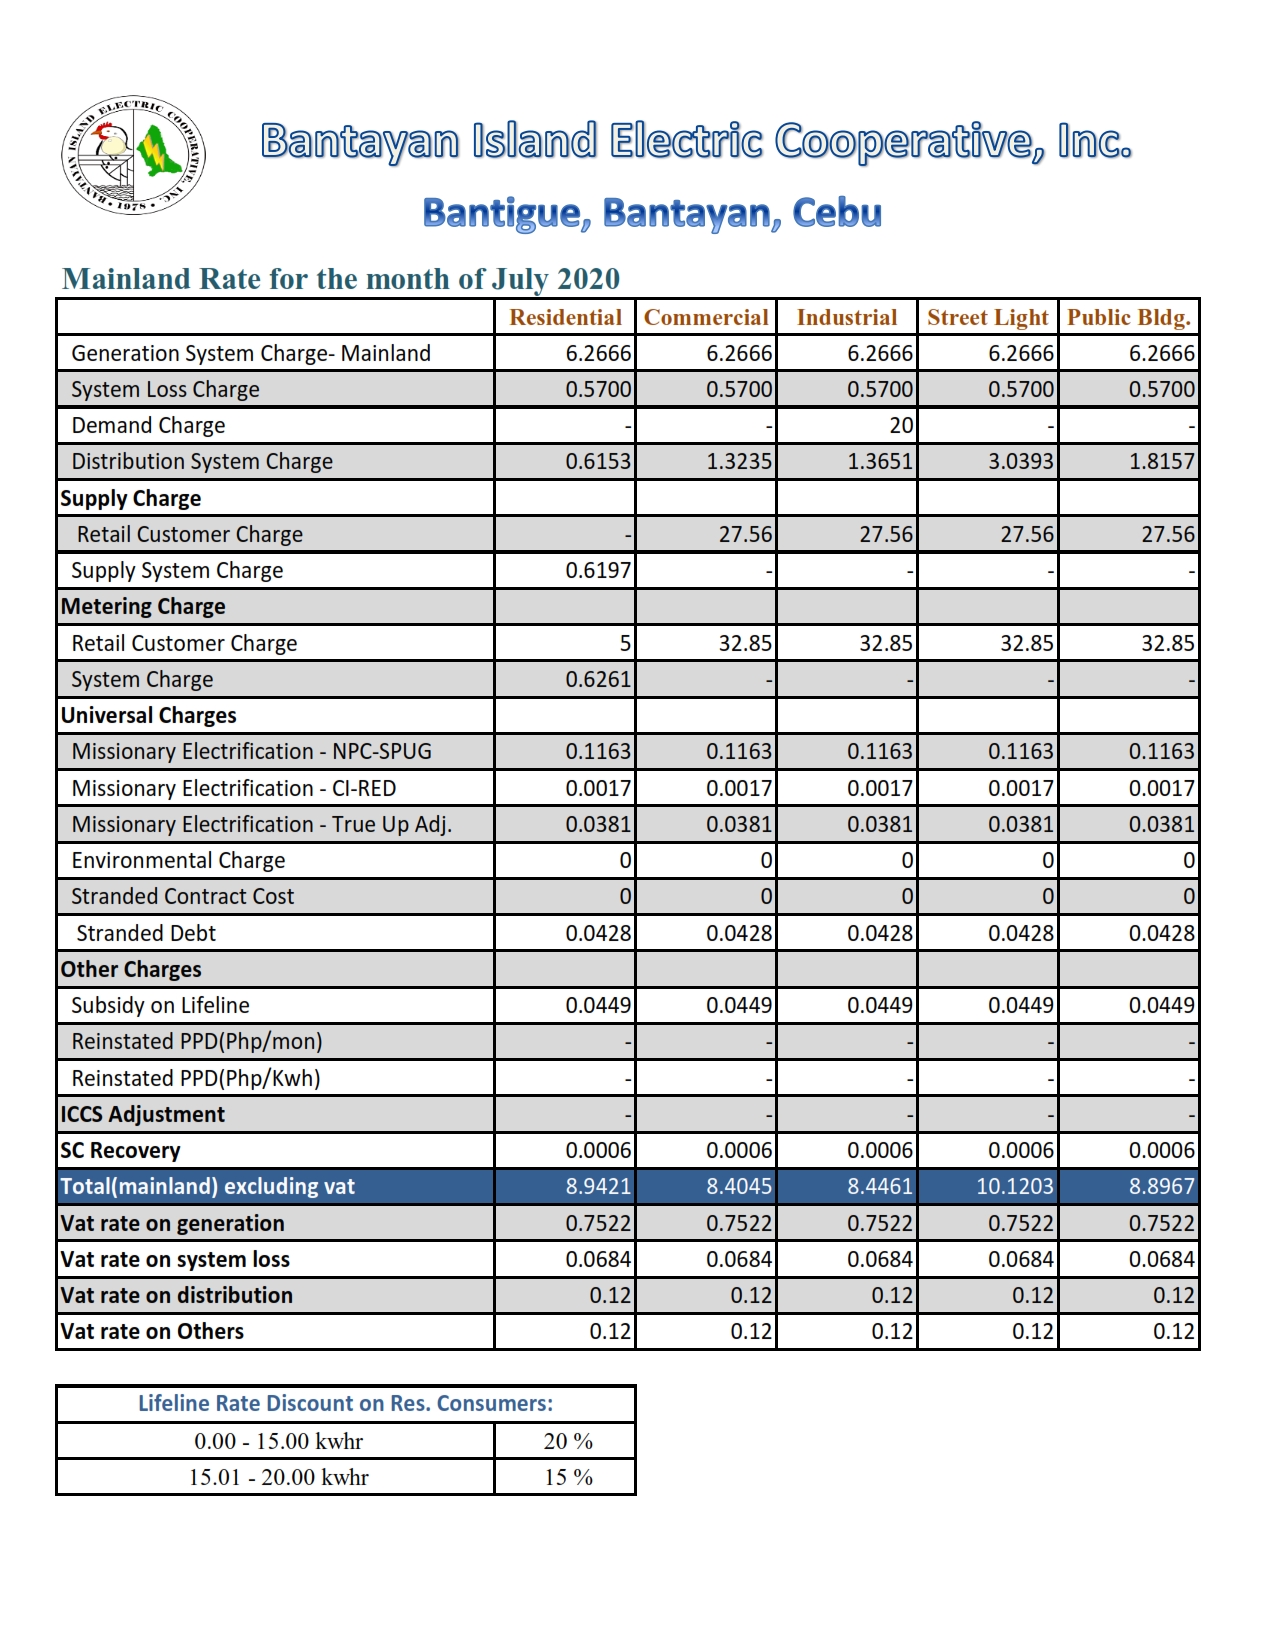 bantayan-mainland-power-rates-july-2020_001